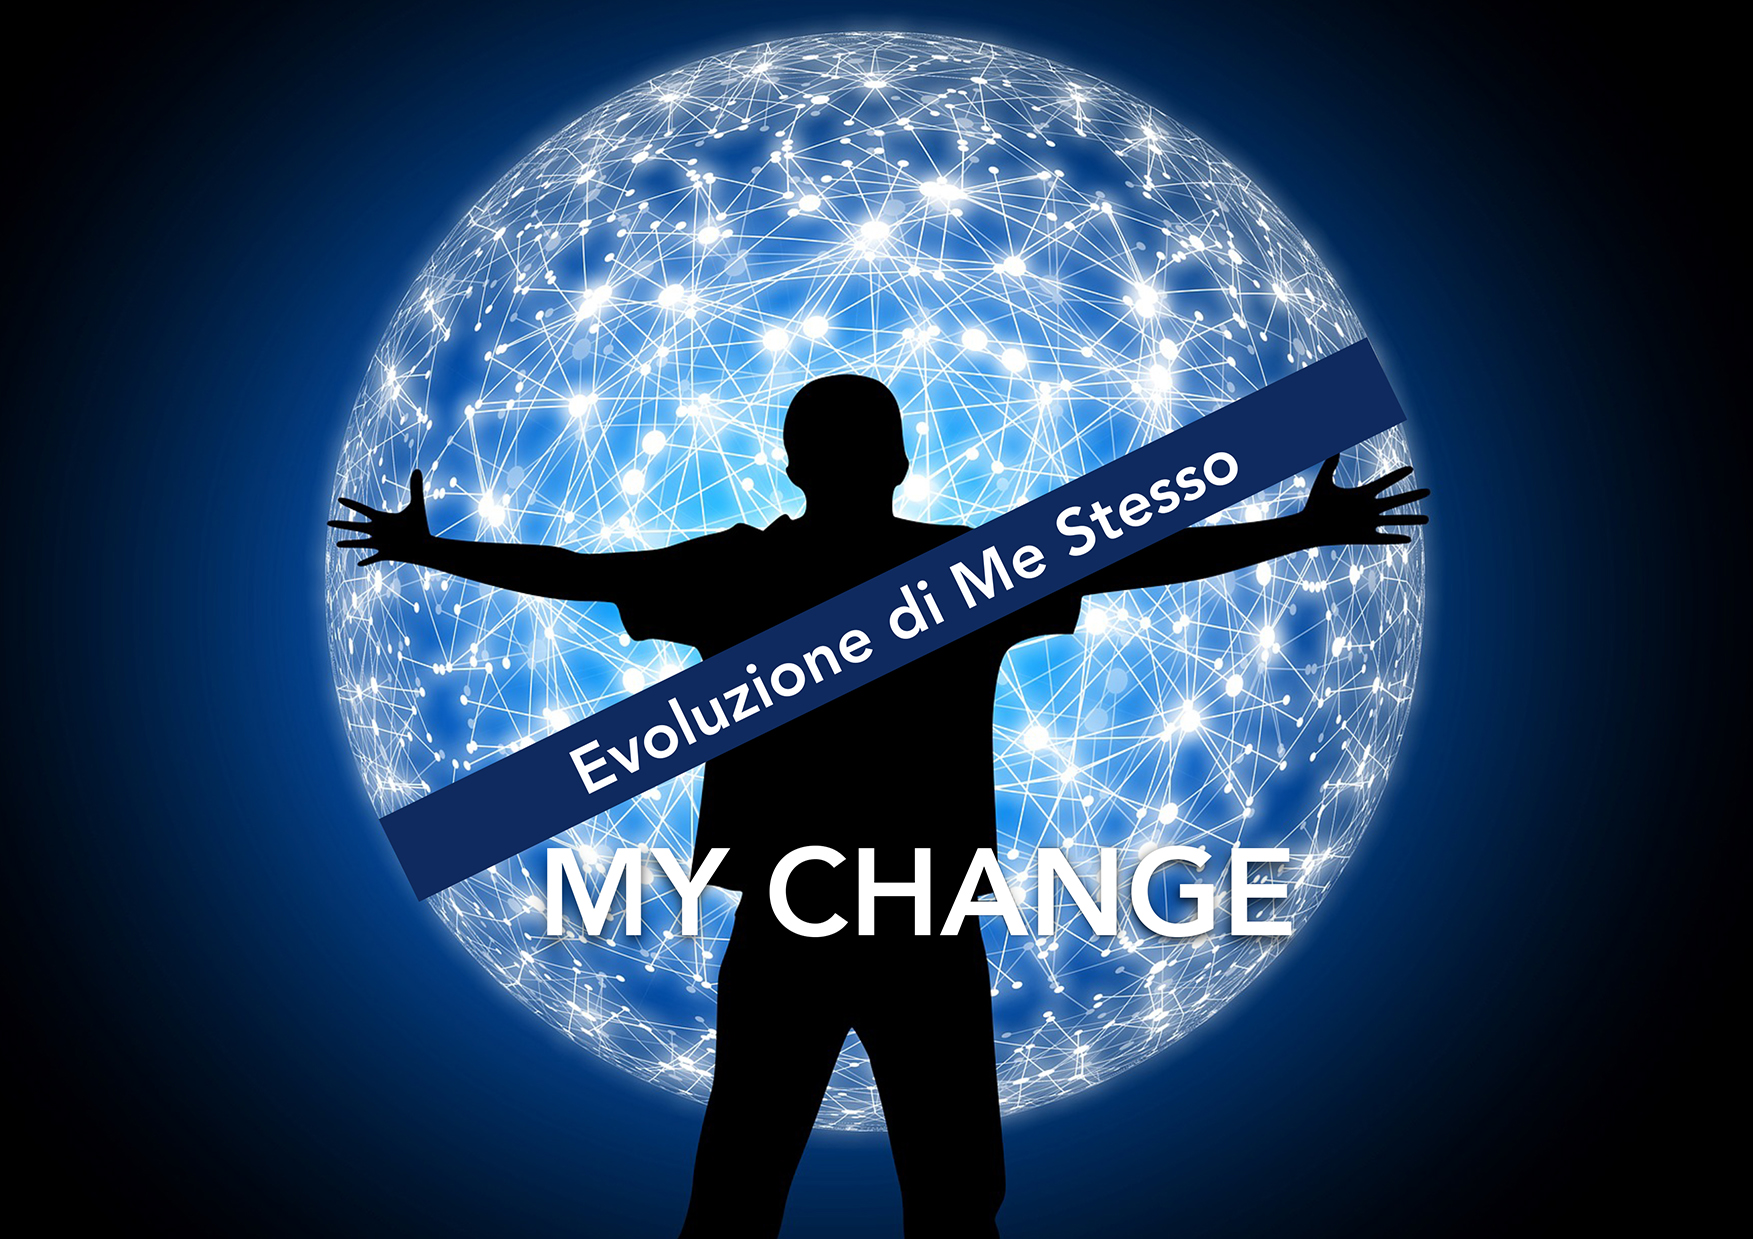 My Change - Evoluzione di me stesso